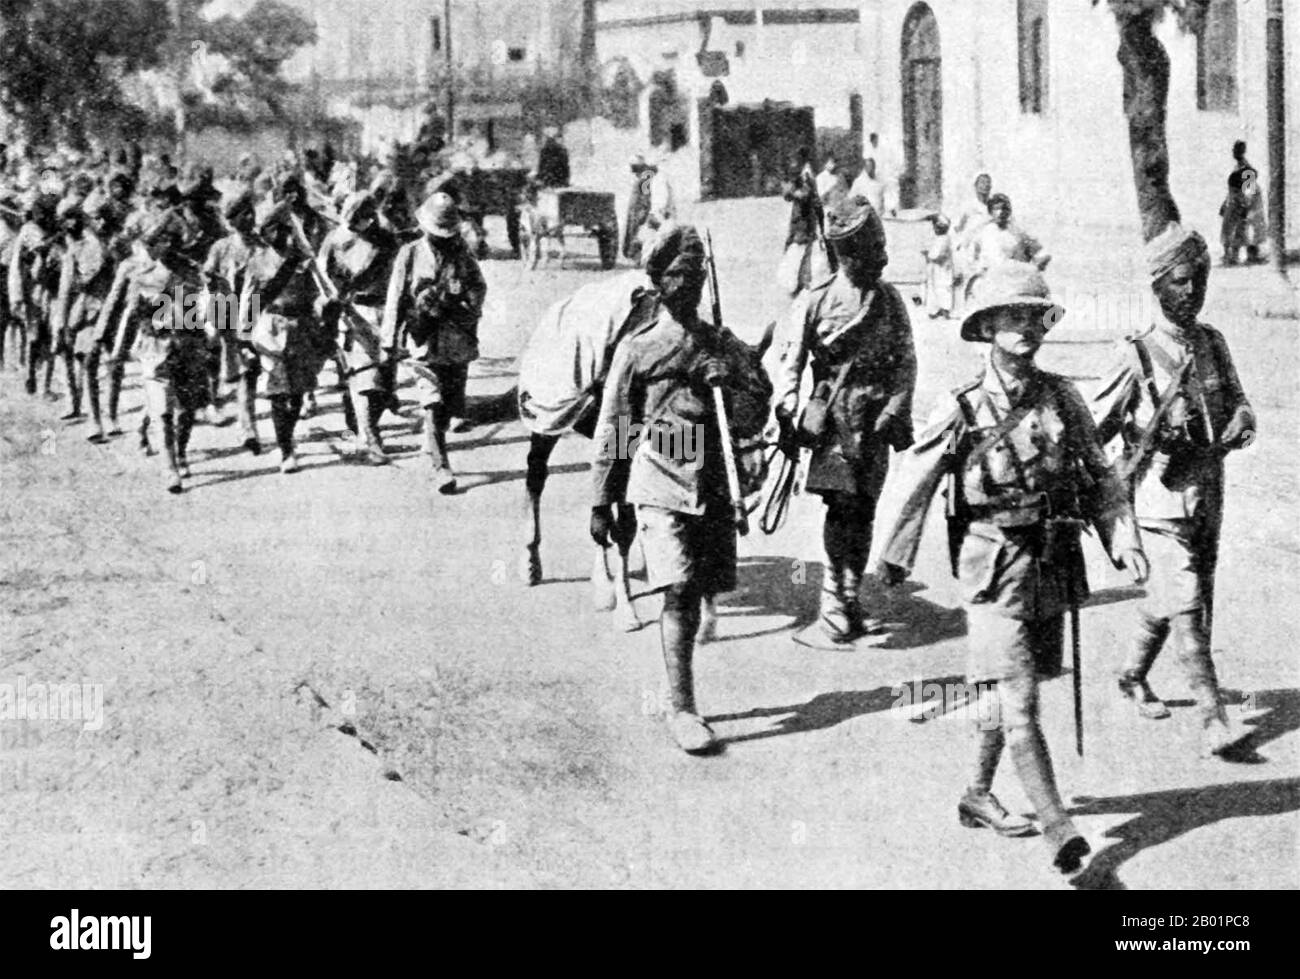 Palästina: Britische und britische indische Truppen in Palästina, 1918. Das Nahost-Theater des Ersten Weltkriegs war Schauplatz der Aktion zwischen dem 29. Oktober 1914 und dem 30. Oktober 1918. Die Kombattanten waren das Osmanische Reich, mit Unterstützung der anderen Mittelmächte, vor allem der Briten und der Russen unter den Alliierten des Ersten Weltkriegs Es gab fünf Hauptkampagnen: Die Sinai- und Palästinenserkampagne, die Mesopotamische Kampagne, die Kaukasuskampagne, die Perserkampagne und die Gallipoli-Kampagne. Stockfoto